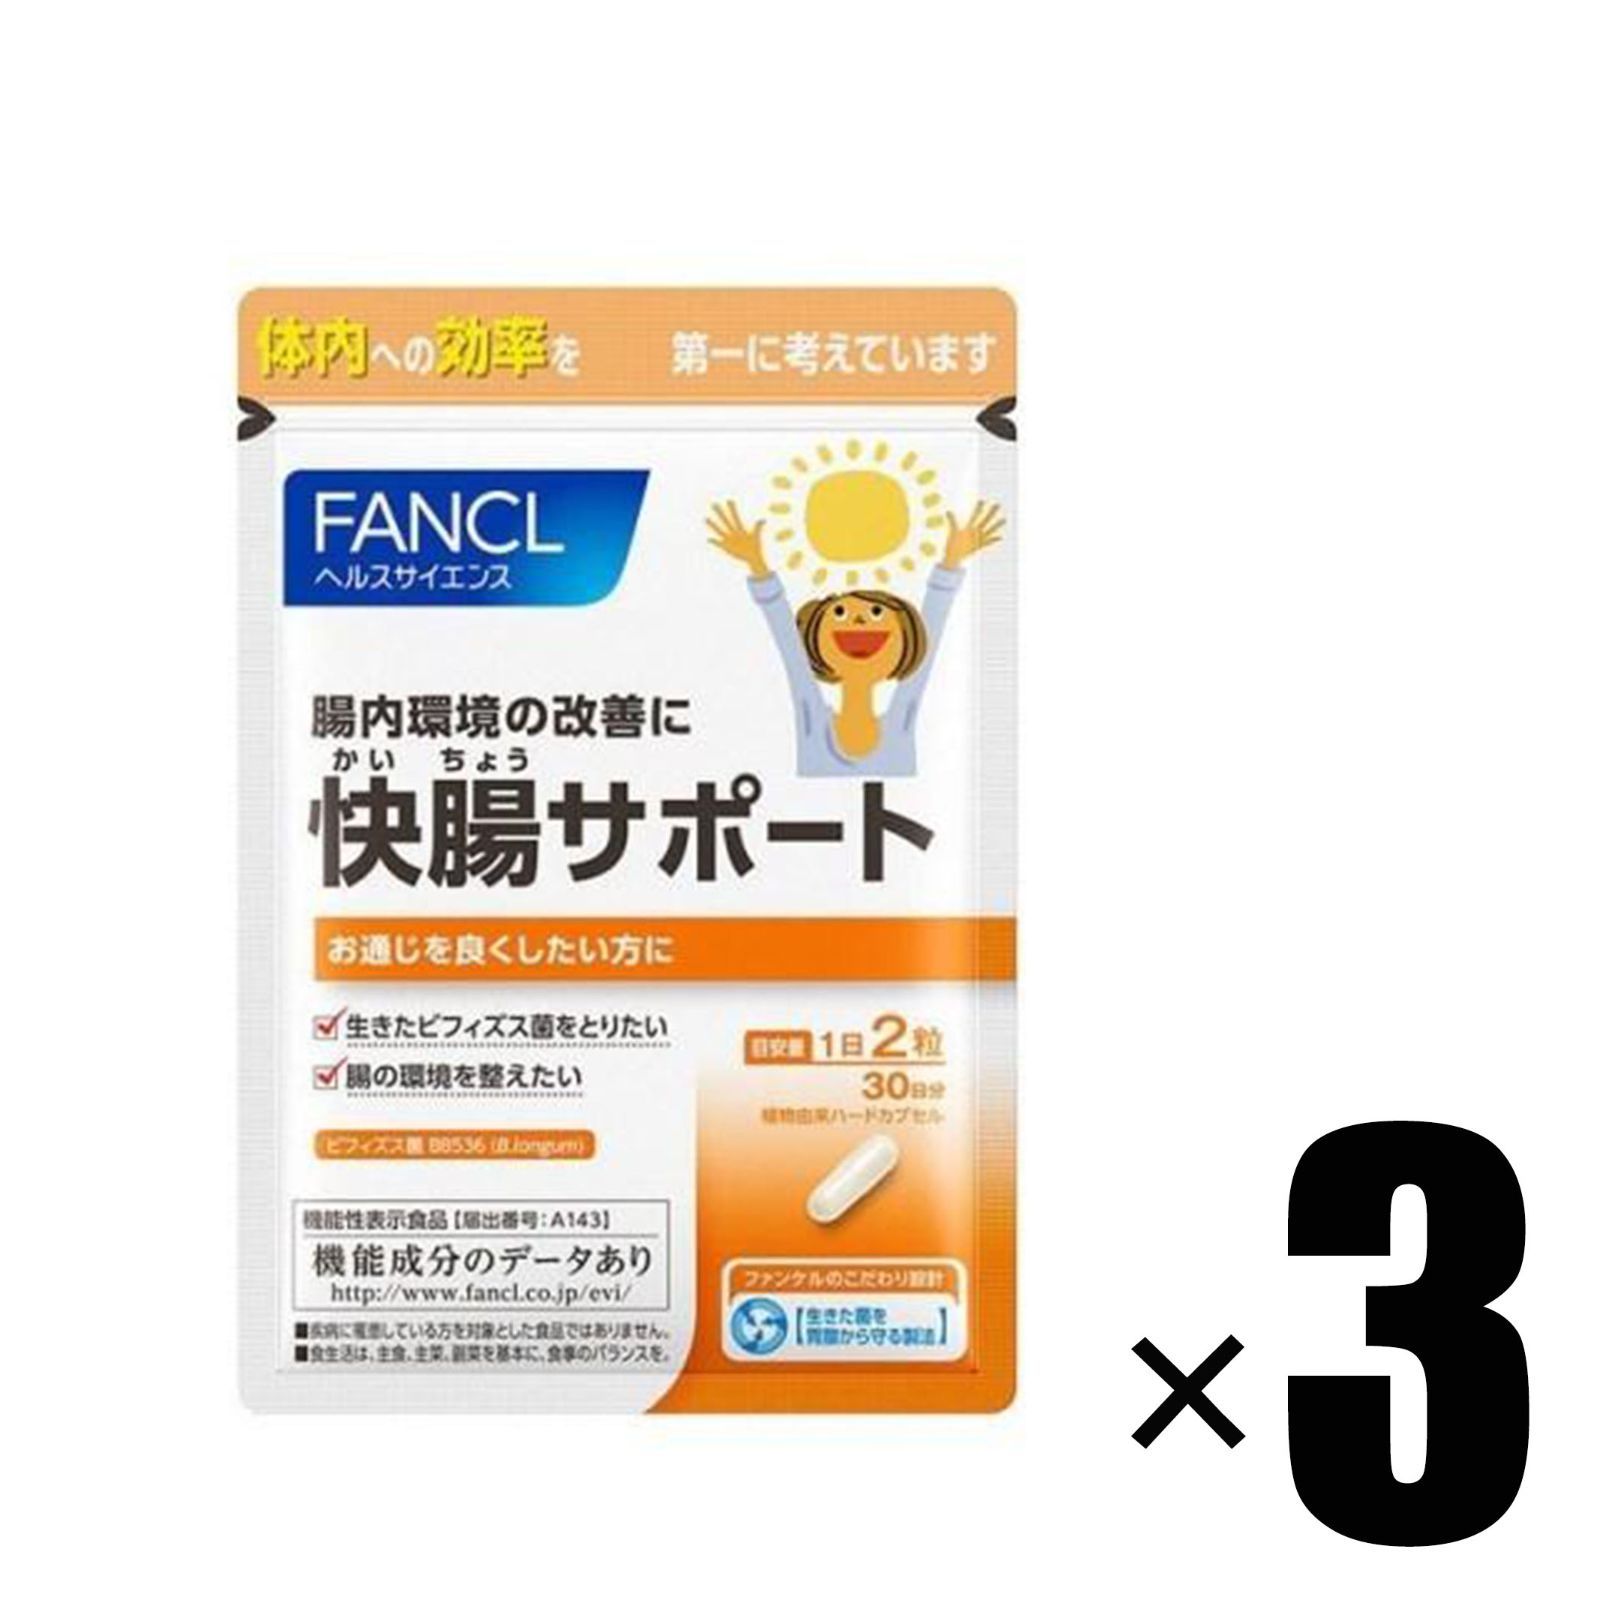 3個) ファンケル FANCL 快腸サポート 30日分 機能性表示食品 - 家電と